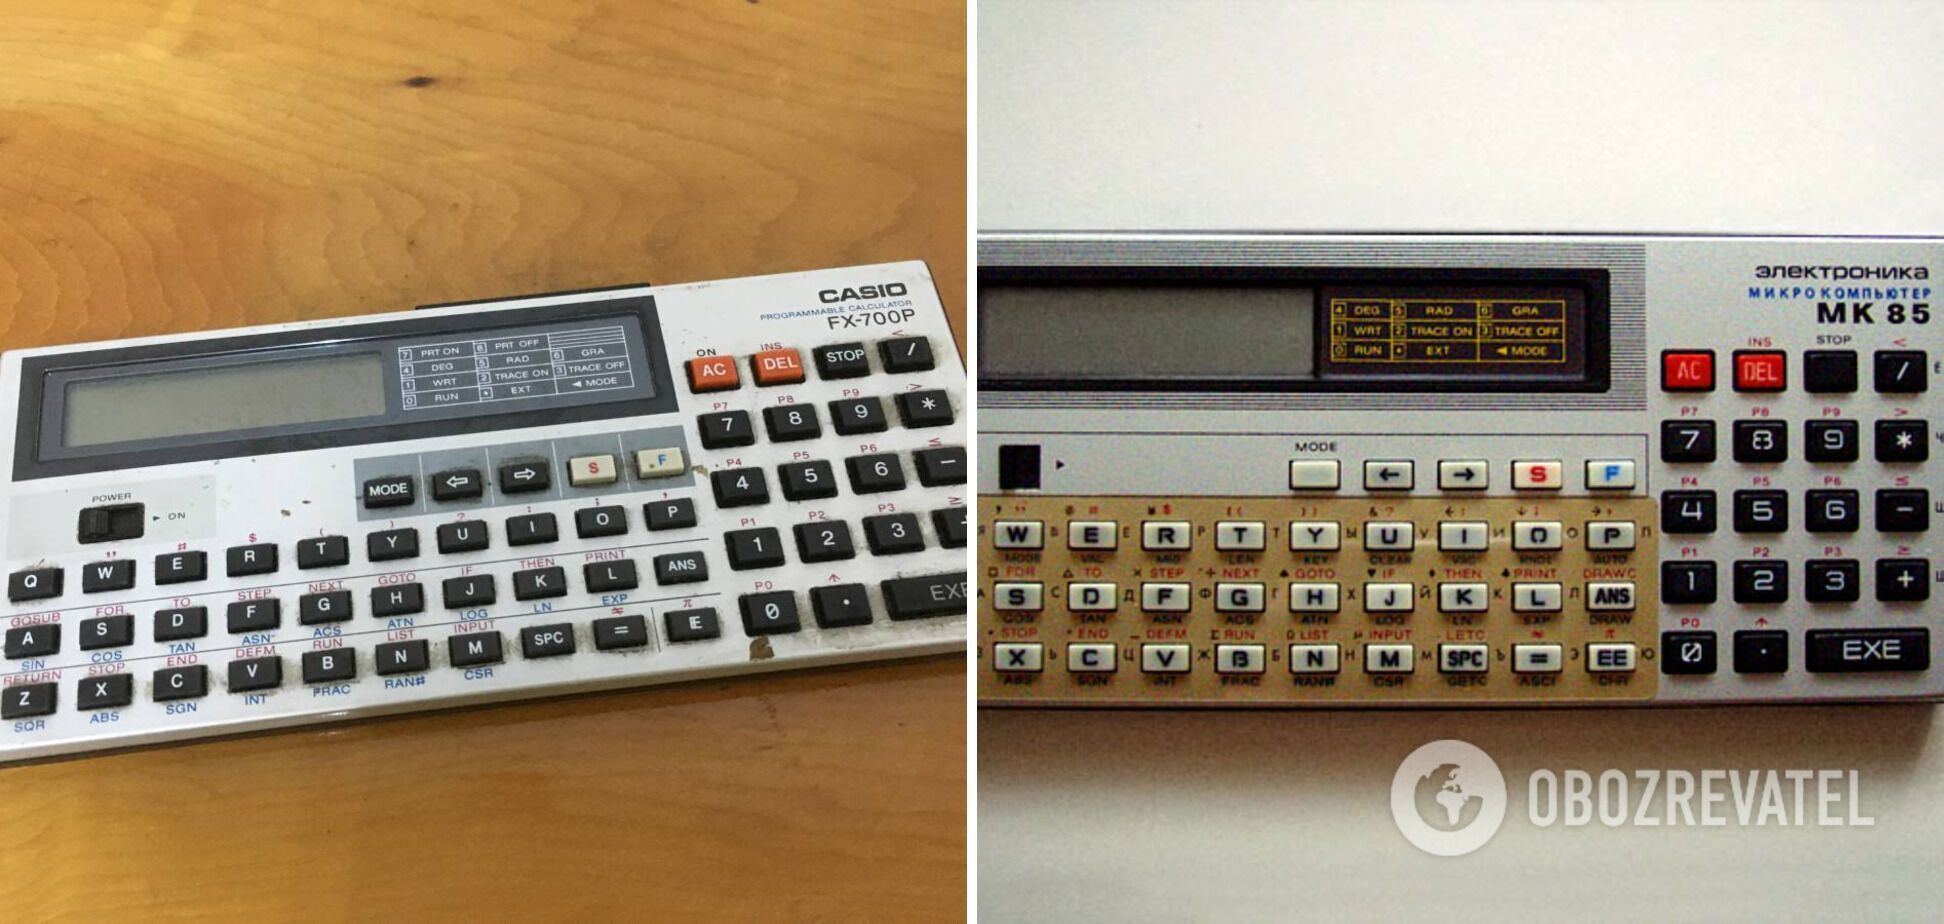 Слева калькулятор "Casio FX-700P", а справа – "Электроника МК-85".